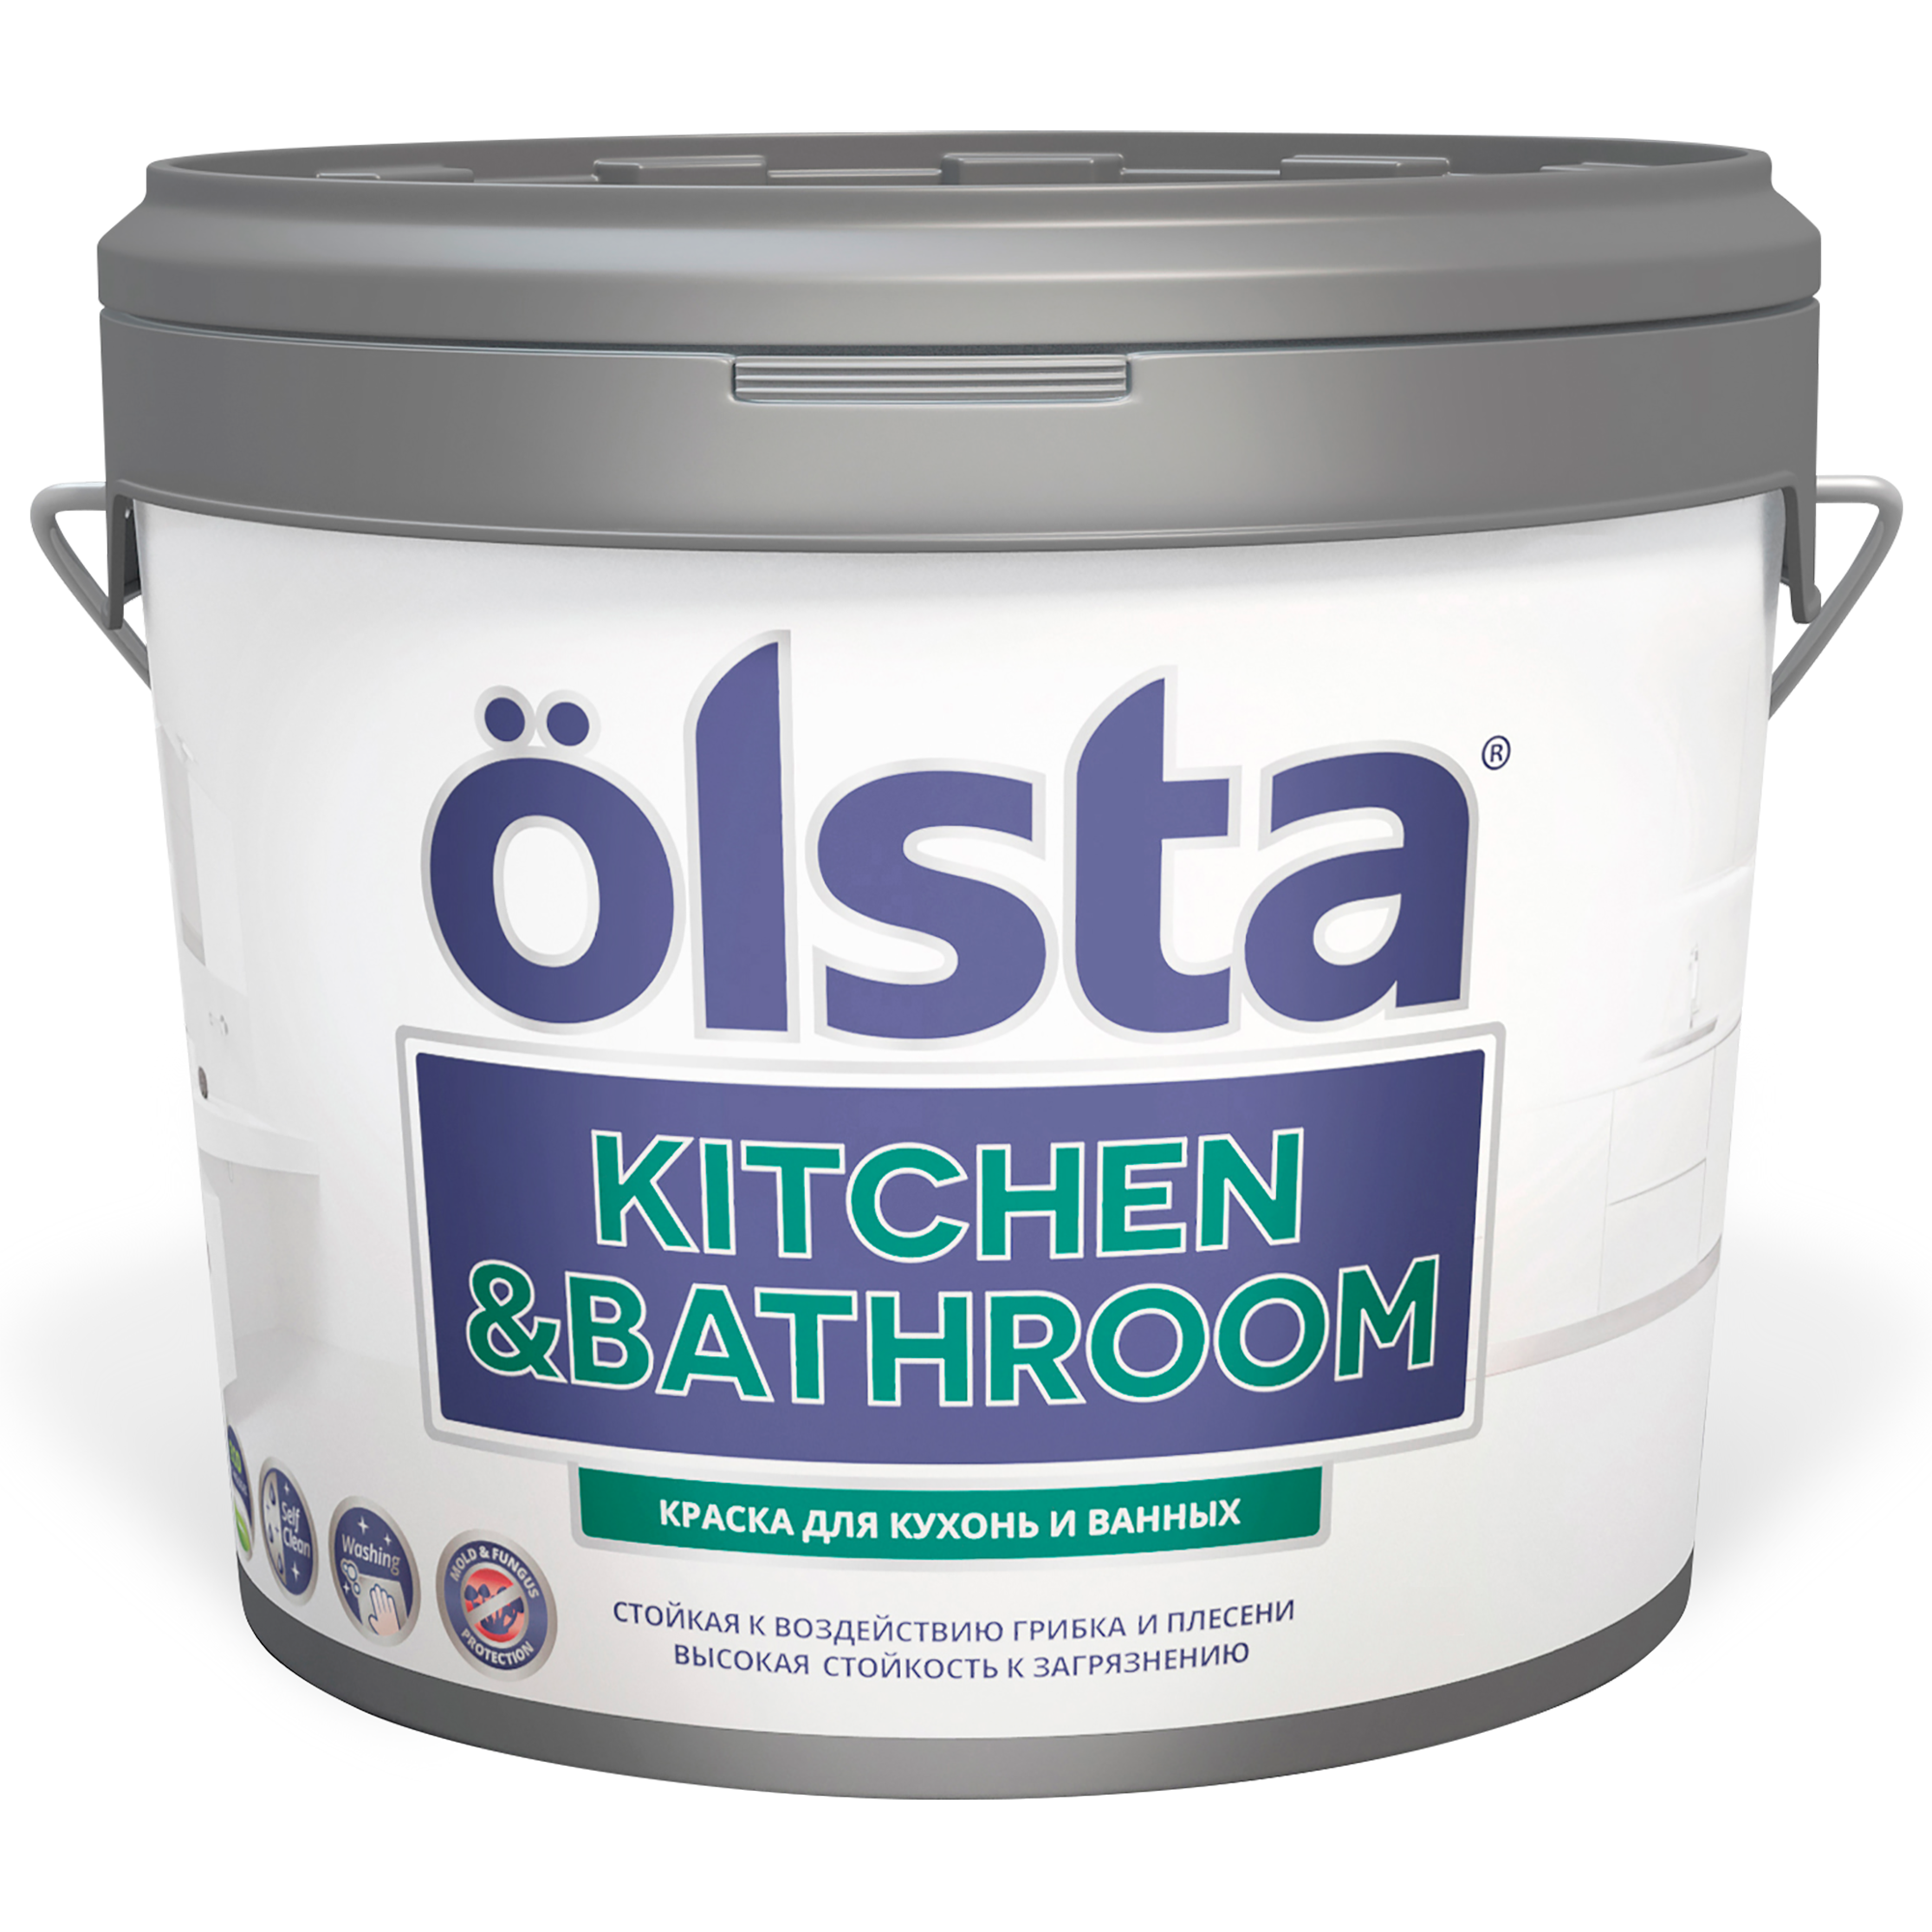 Где купить Краска для кухонь и ванных акриловая Olsta kitchen&bathroom a2.7л Olsta 